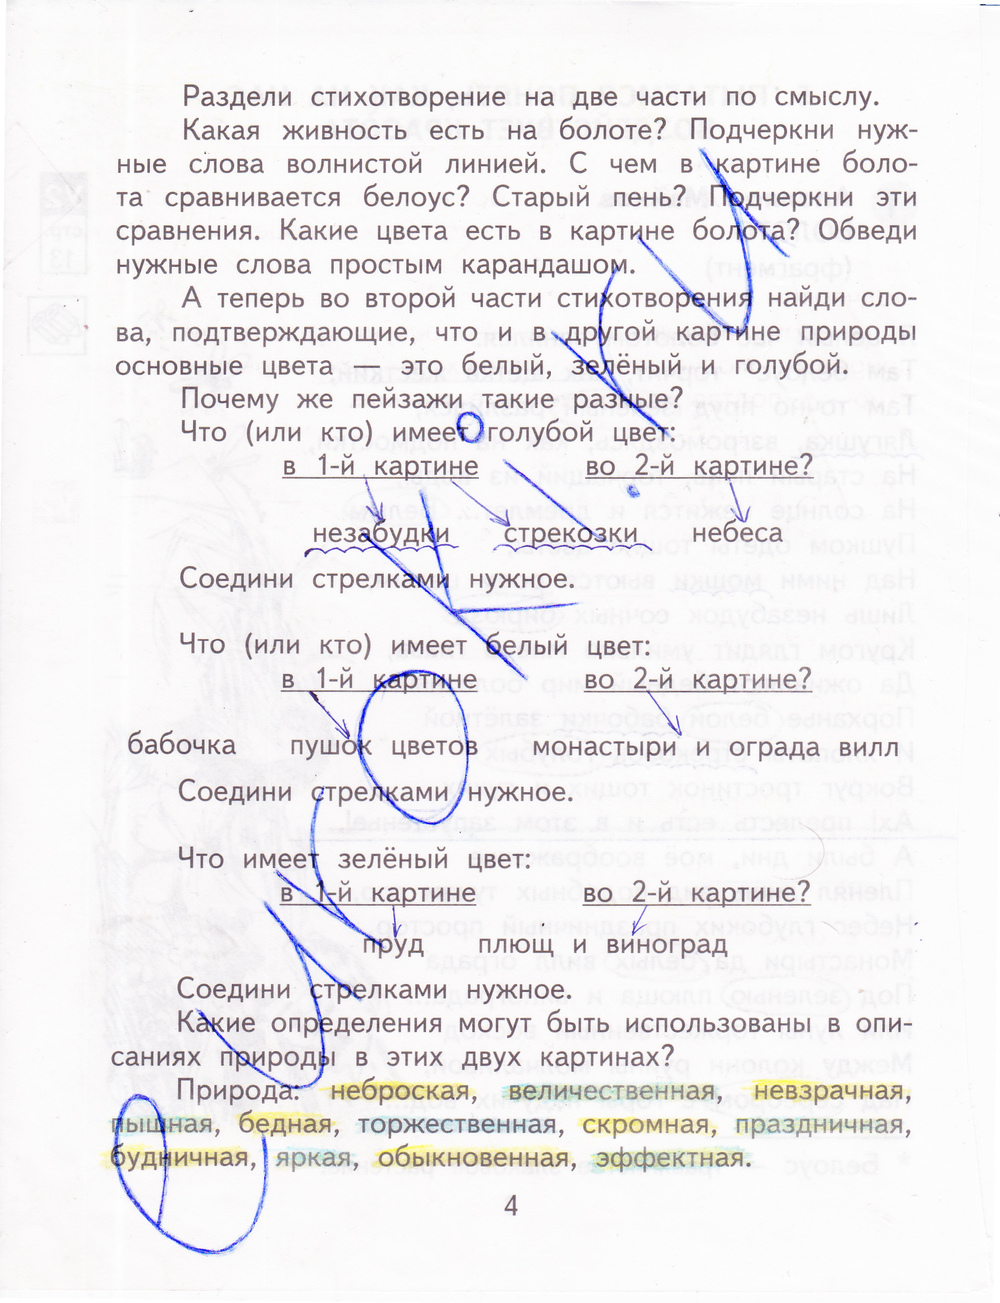 Ответы на задания к учебнику по русскому языку 2 класс чуракова